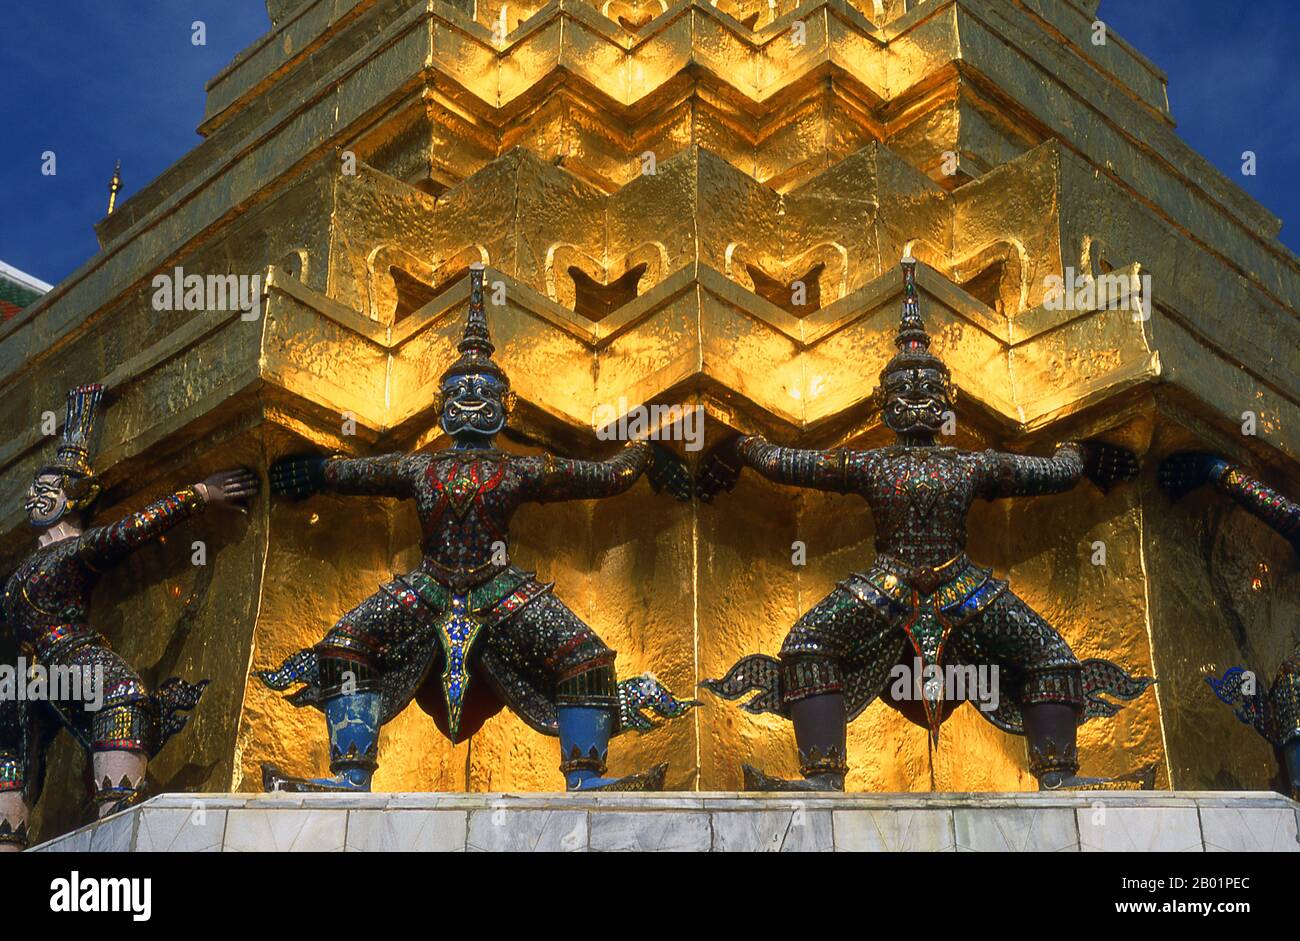 Thailandia: Giganti che sostengono un chedi (tutti i giganti intorno al chedi sono personaggi del Ramakien), Wat Phra Kaew, Grand Palace, Bangkok. Il Ramakien è la versione thailandese dell'epica indiana, il Ramayana o il "romanzo di Rama", e ha un'influenza importante sulla letteratura, l'arte e il dramma tailandese. È considerata l'epica nazionale della Thailandia. Wat Phra Kaew (Tempio del Buddha di Smeraldo); nome ufficiale completo Wat Phra si Rattana Satsadaram è considerato il tempio buddista più sacro della Thailandia. Si trova all'interno dei quartieri del Grand Palace. Foto Stock